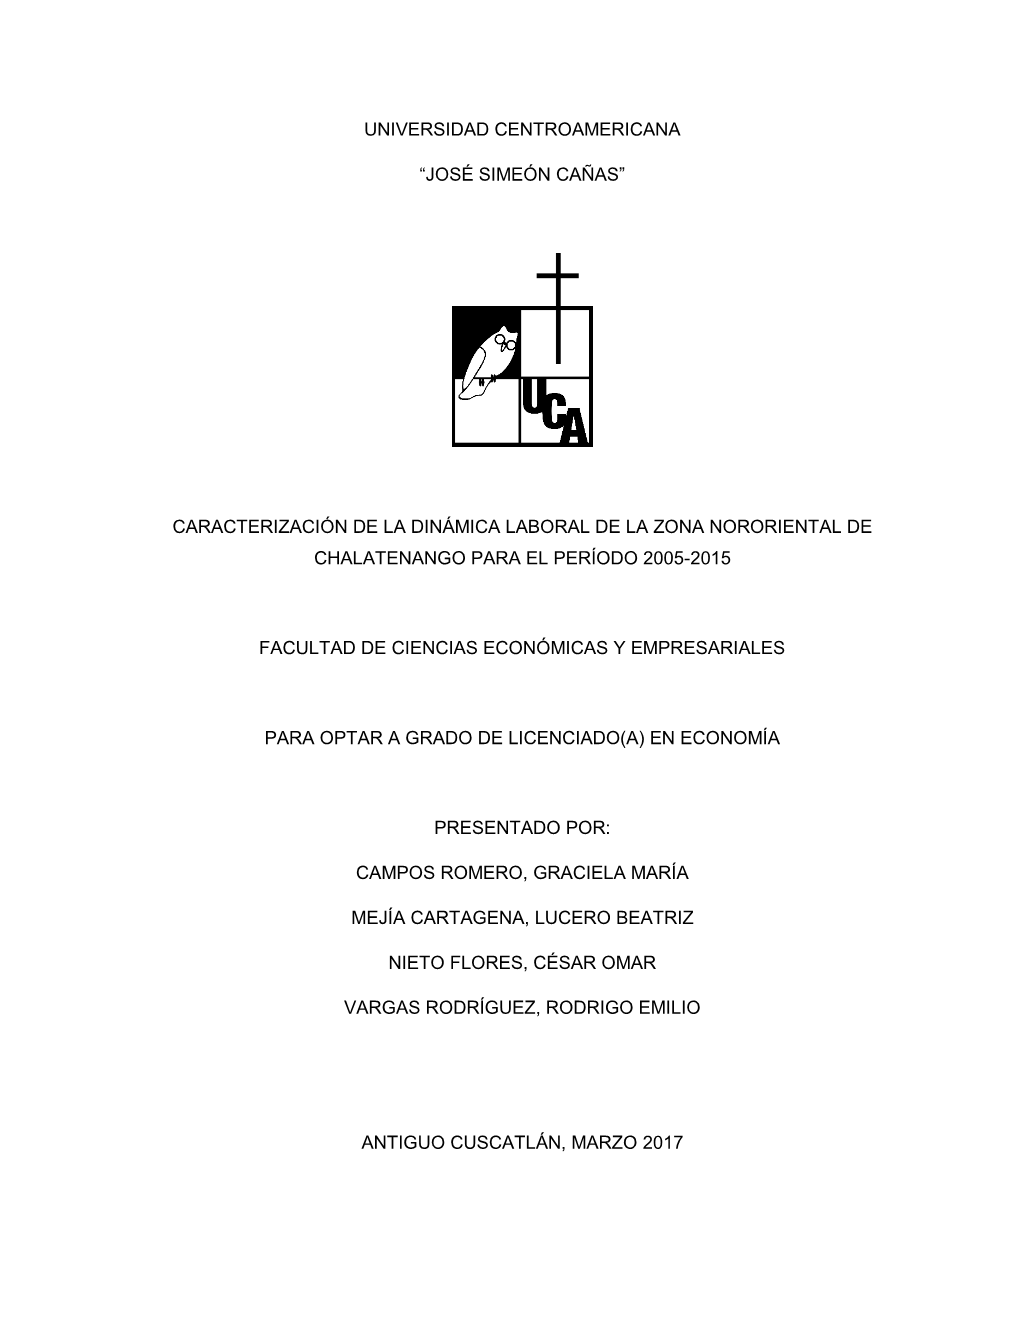 Caracterización De La Dinámica Laboral De La Zona Nororiental De Chalatenango Para El Período 2005-2015